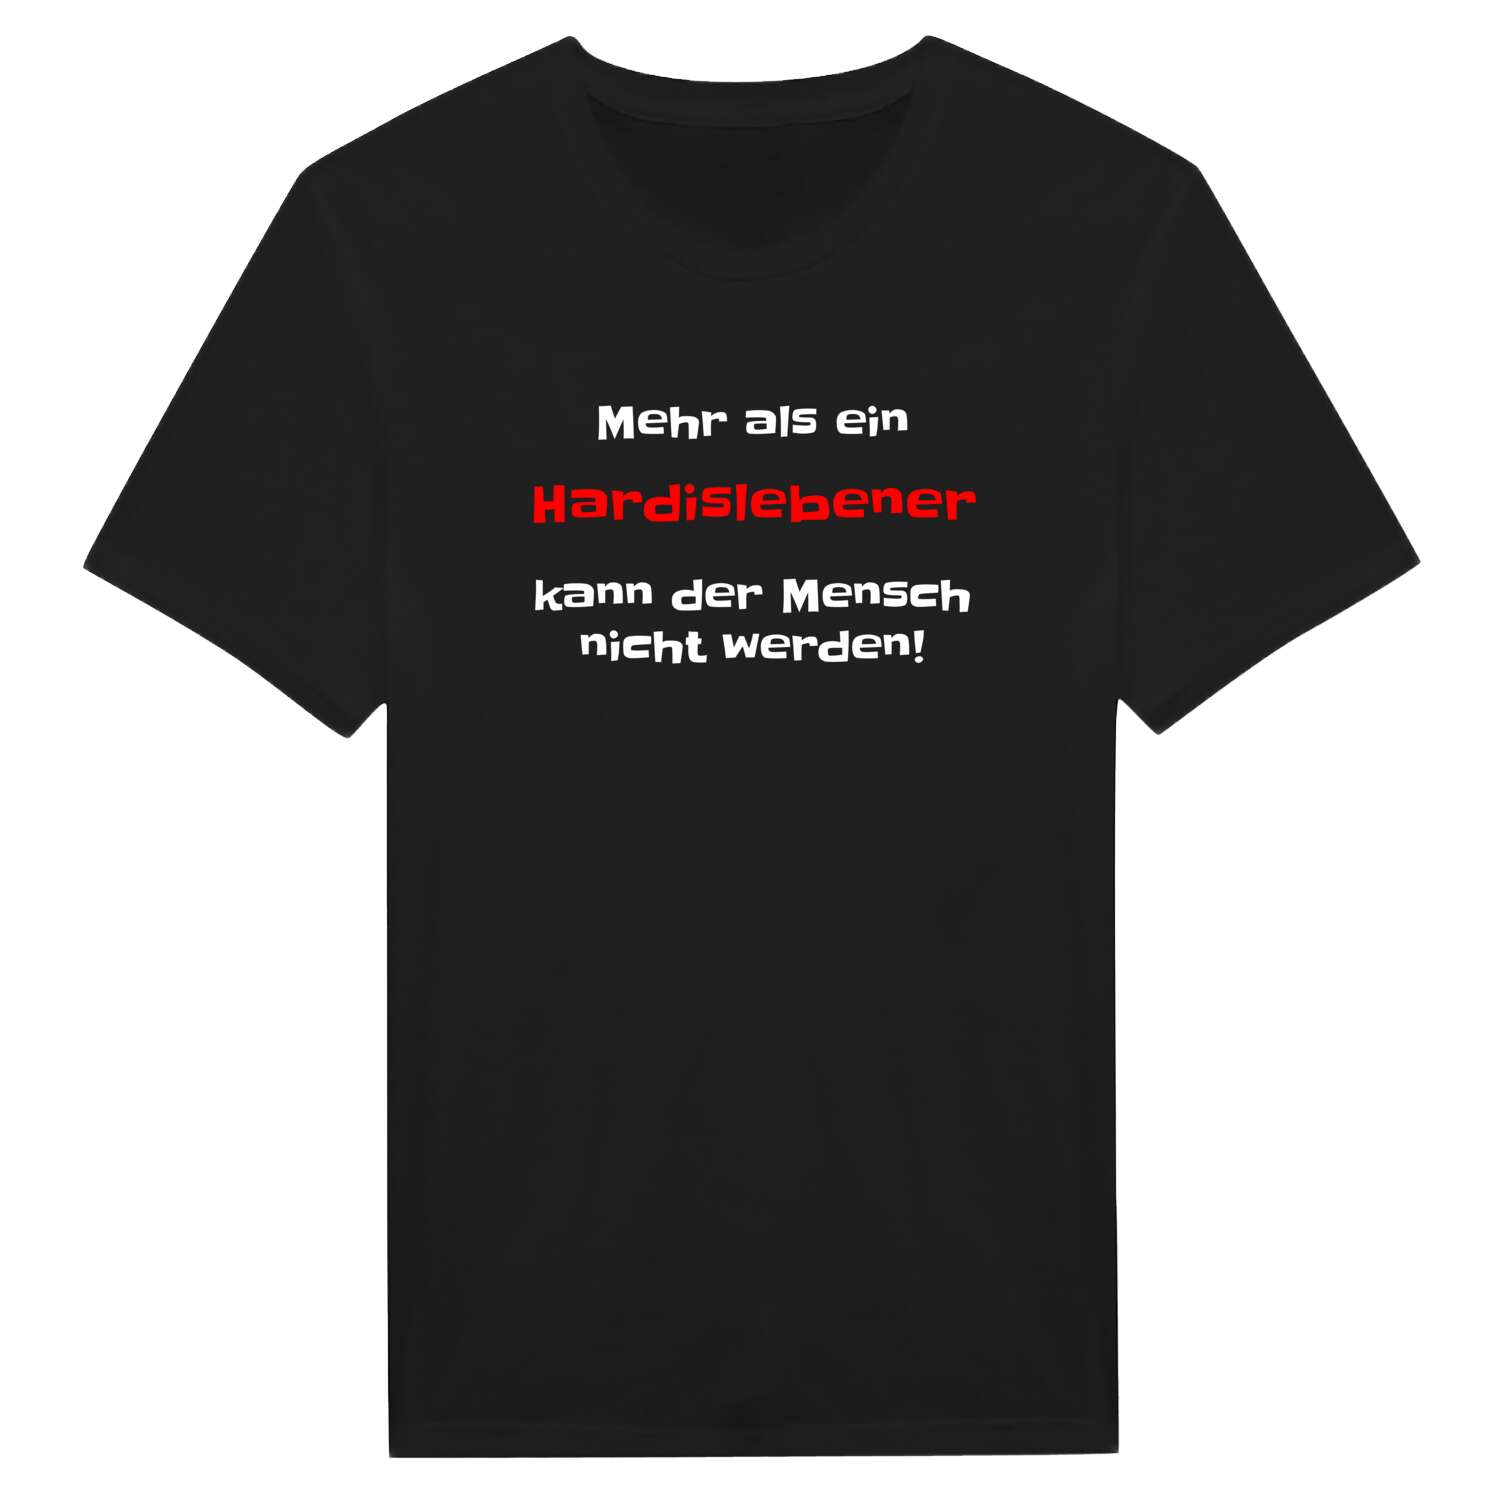 Hardisleben T-Shirt »Mehr als ein«